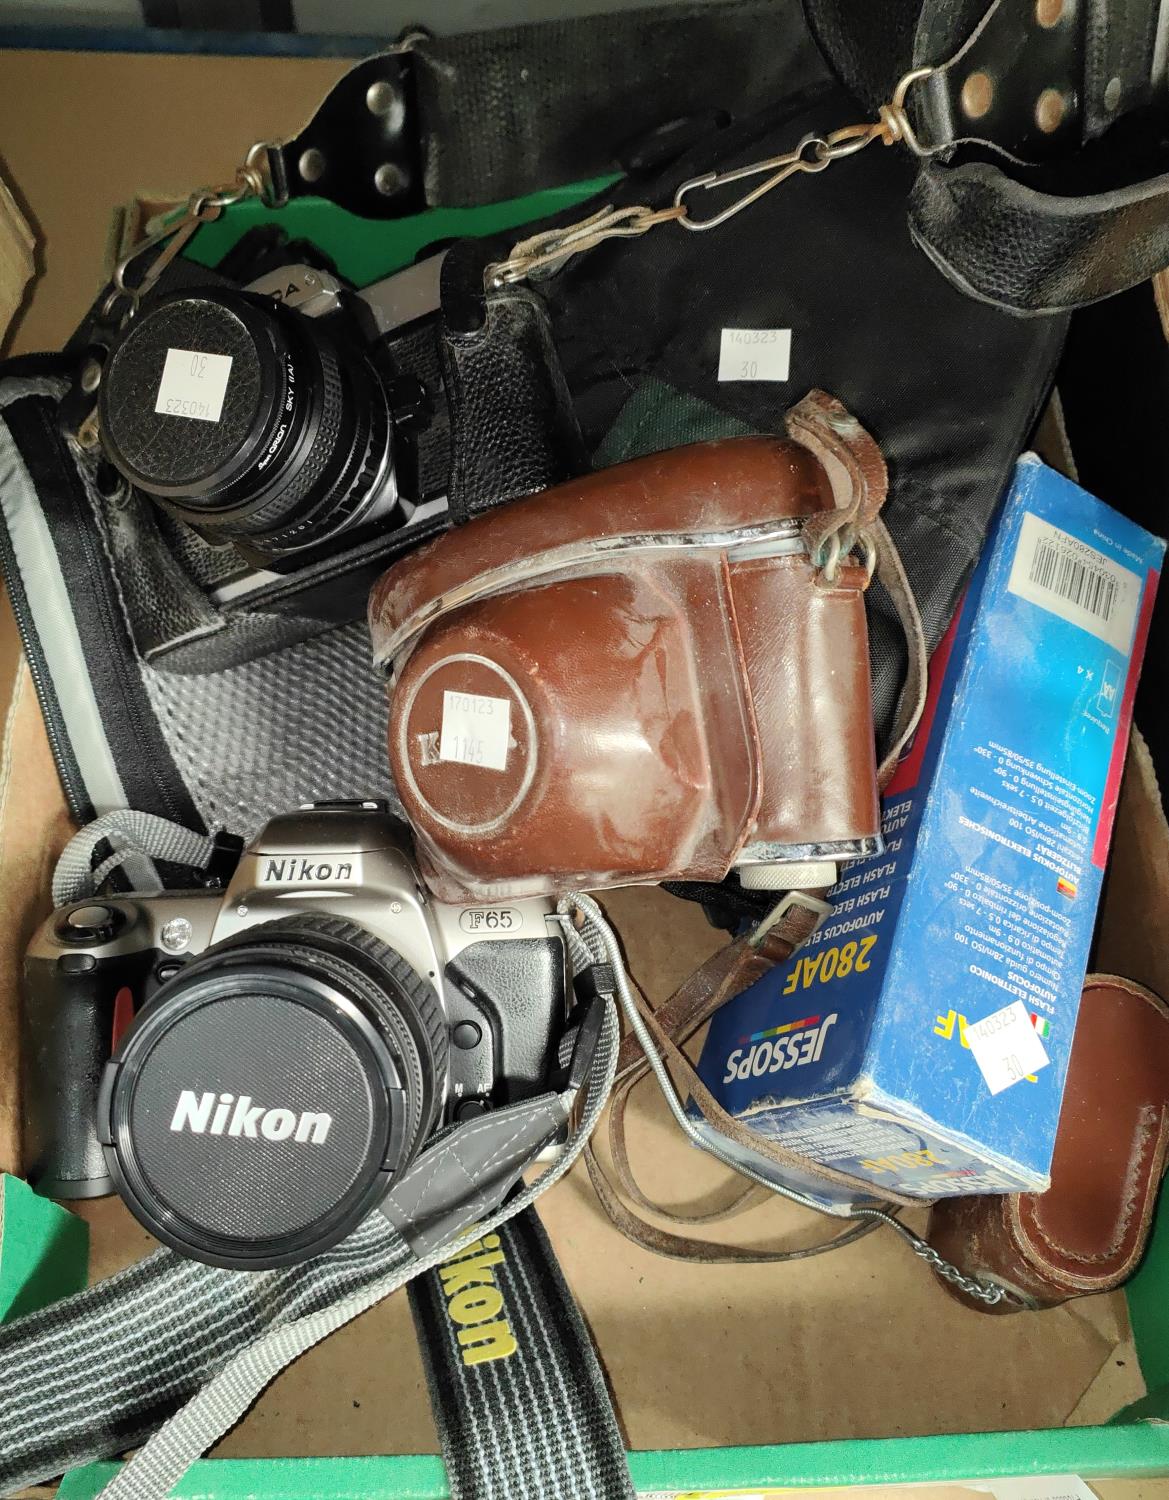 A Nikon F65 SLR camera; a similar Fujica camera; a Kodak camera; etc.